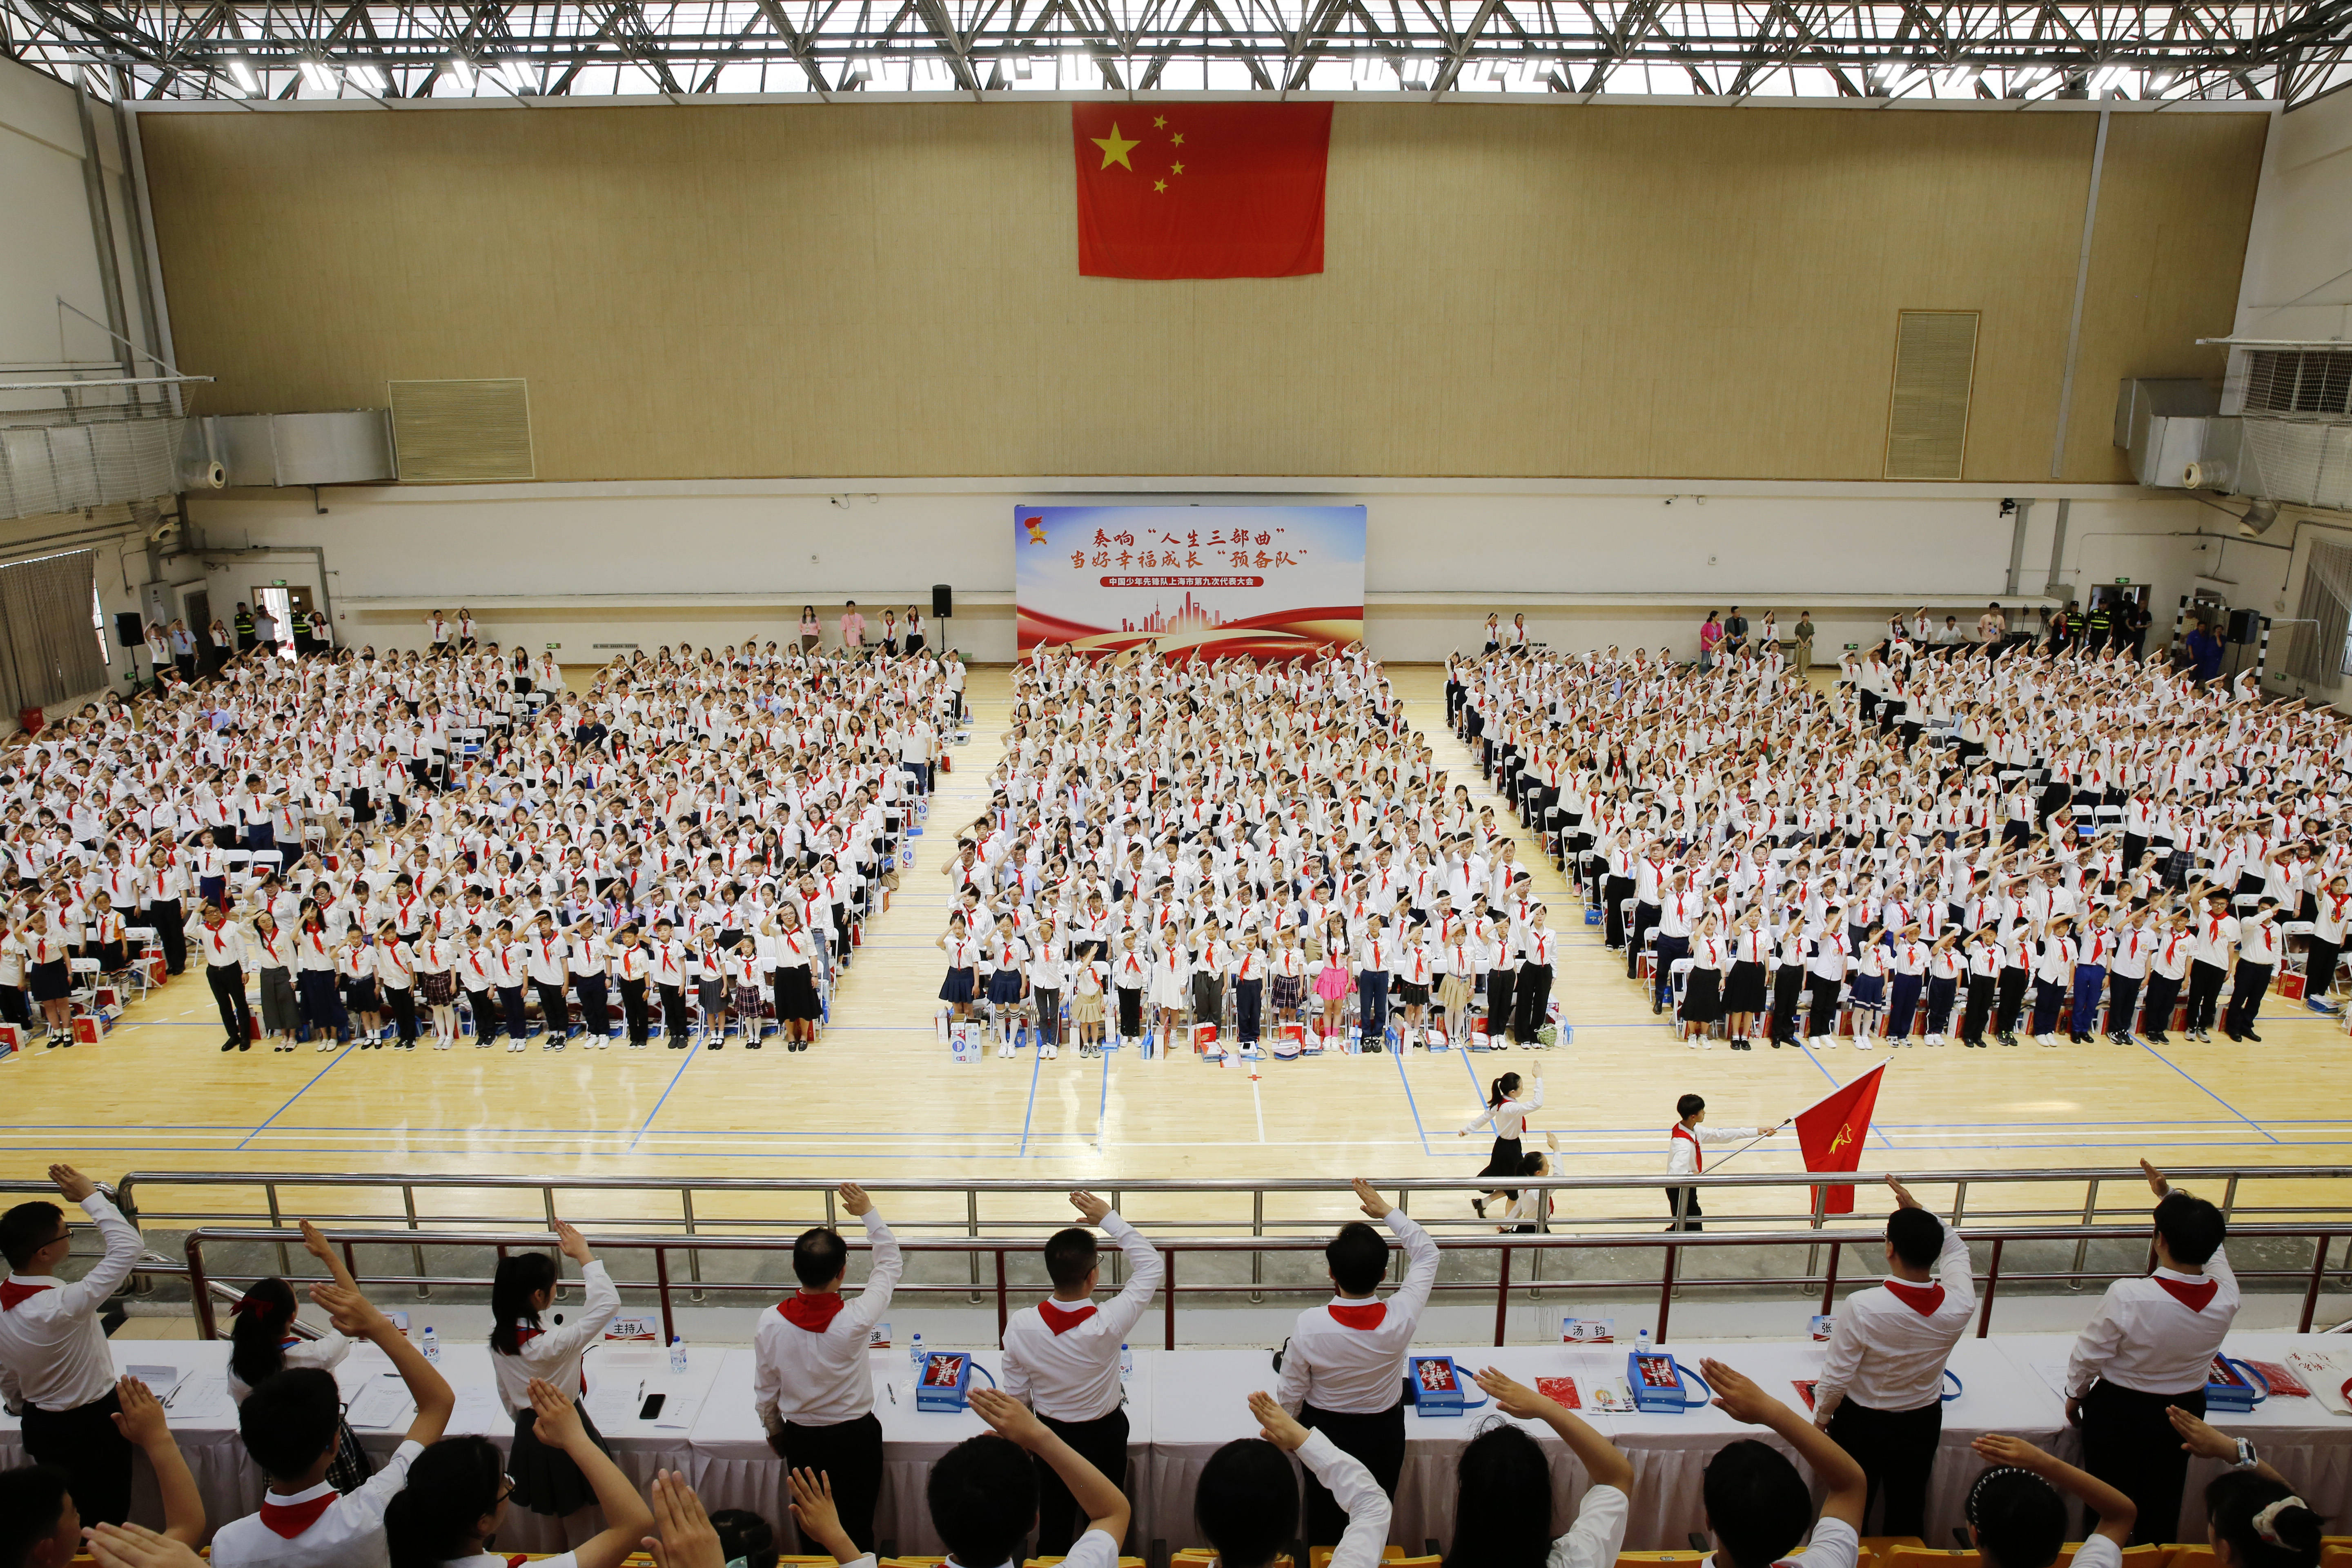 上海市长宁区复旦小学学生单辰杰观察到,双减政策实施后,中小学校